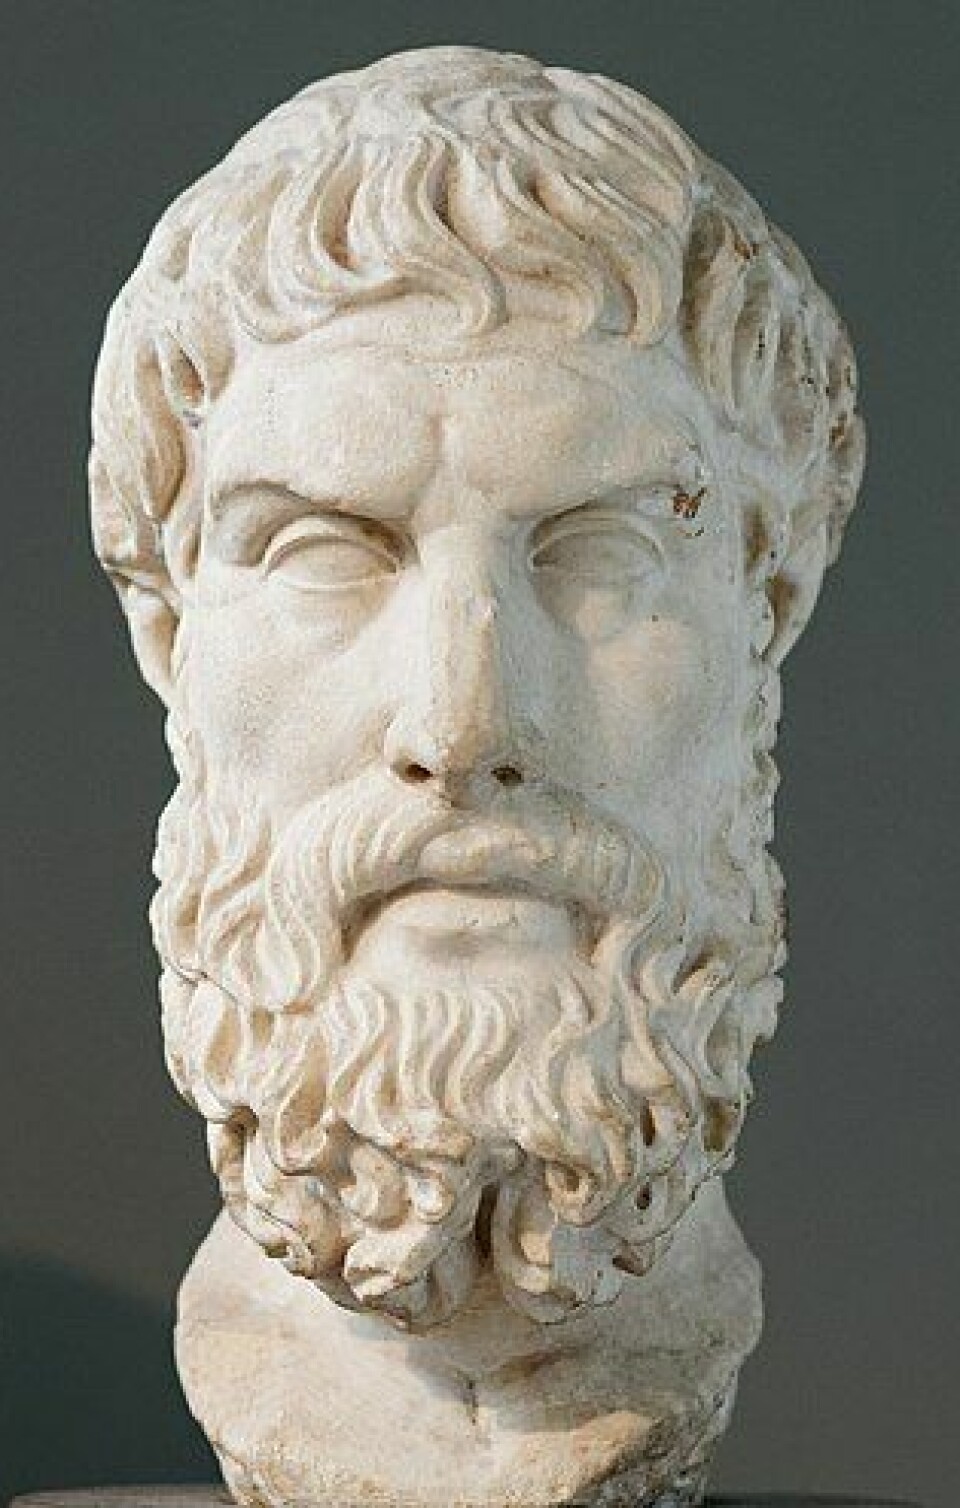 Epikur var en filosof fra antikkens Hellas og grunnlegger av den filosofiske retningen epikureismen